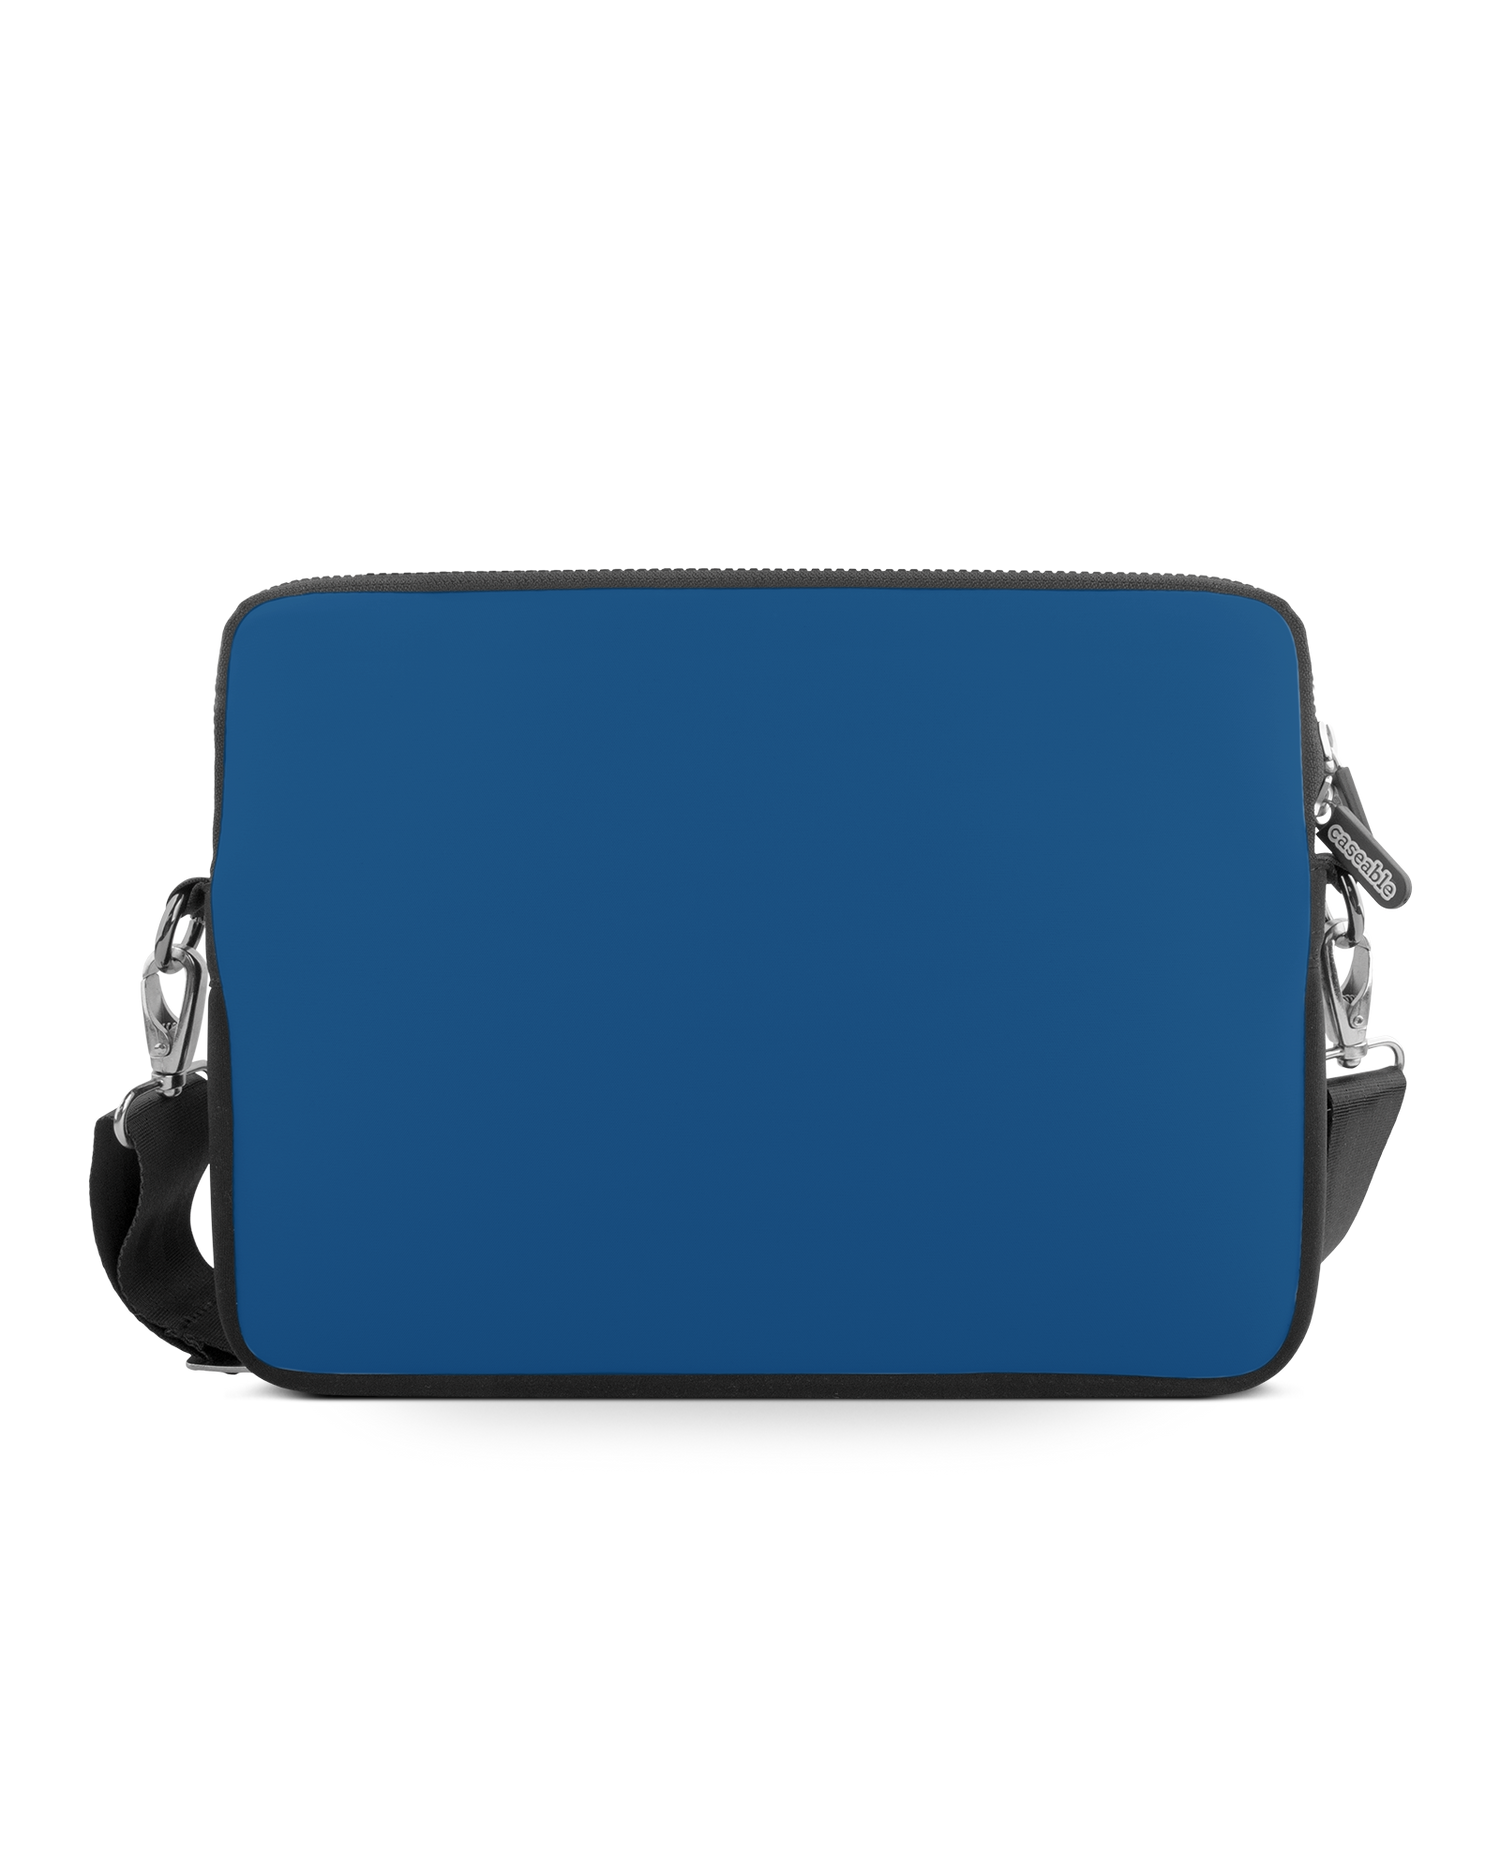 CLASSIC BLUE Premium Laptoptasche 15 Zoll: Vorderansicht